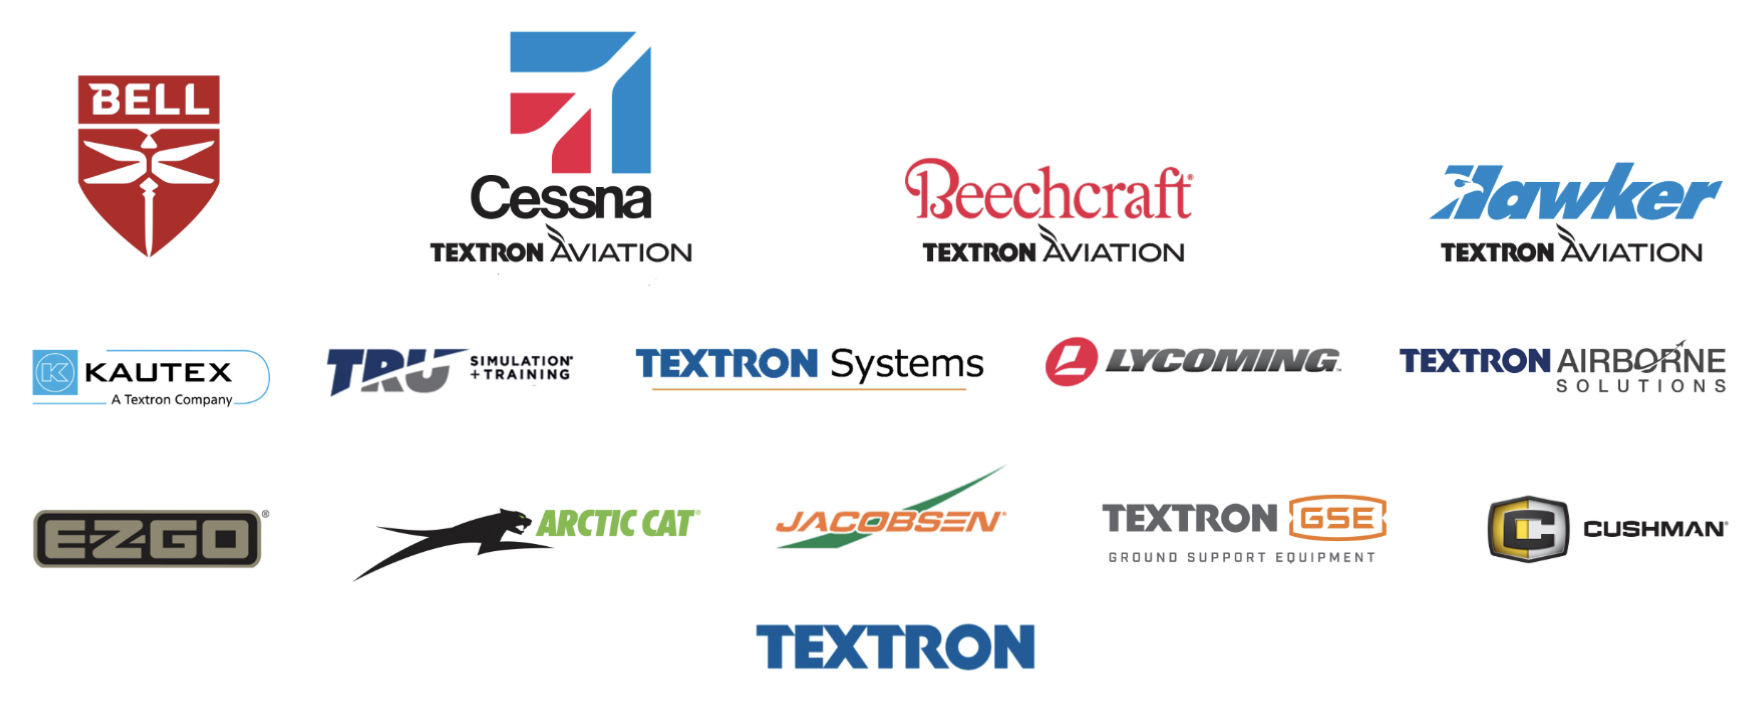 Логотипы брендов компании. Источник: презентация Textron, слайд 6